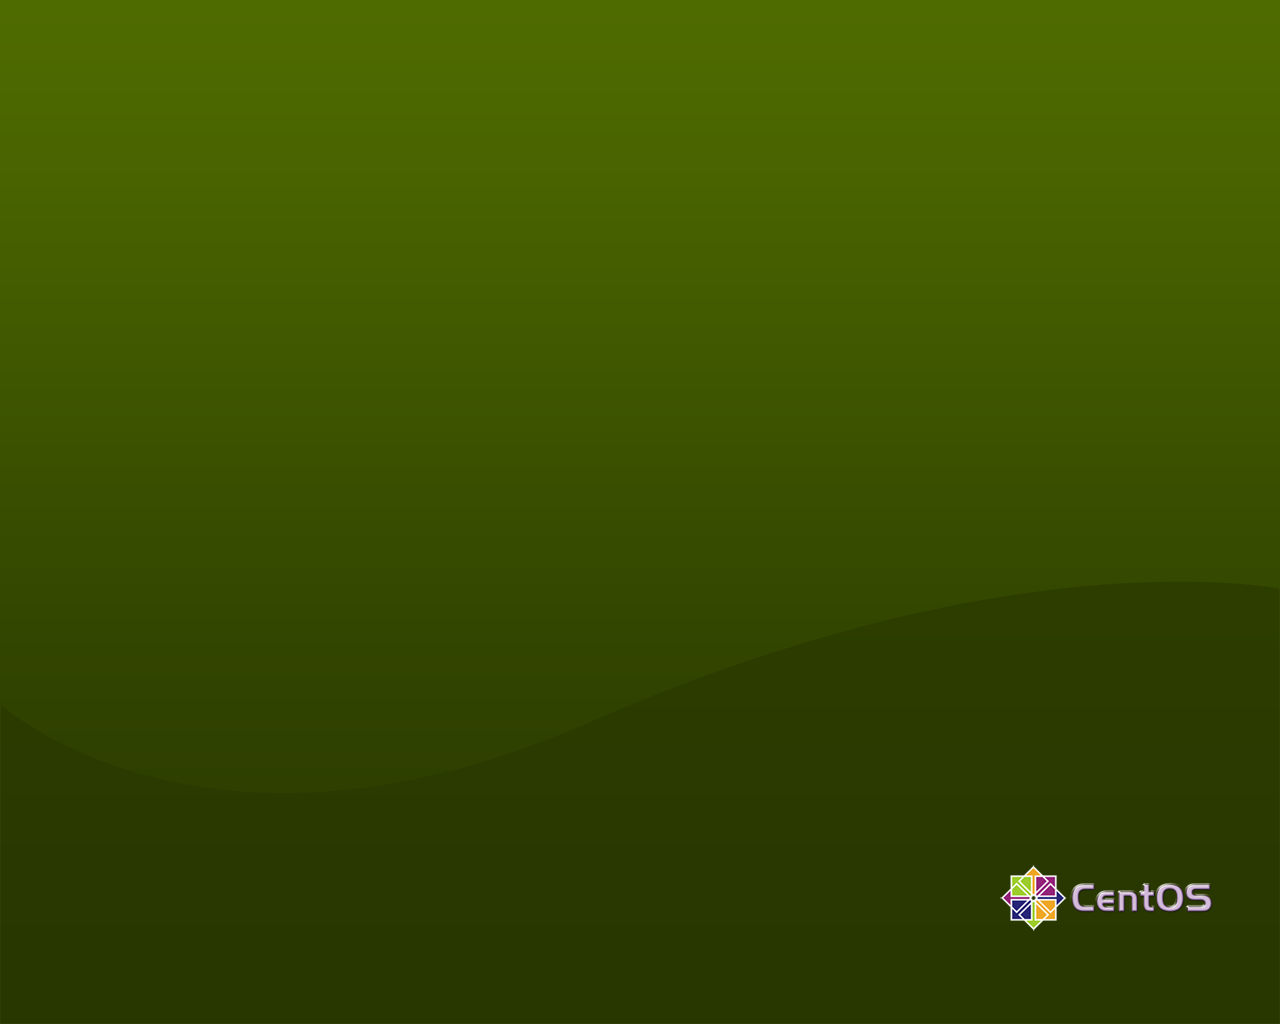 Green, background, desktop, wallpapers - 73489